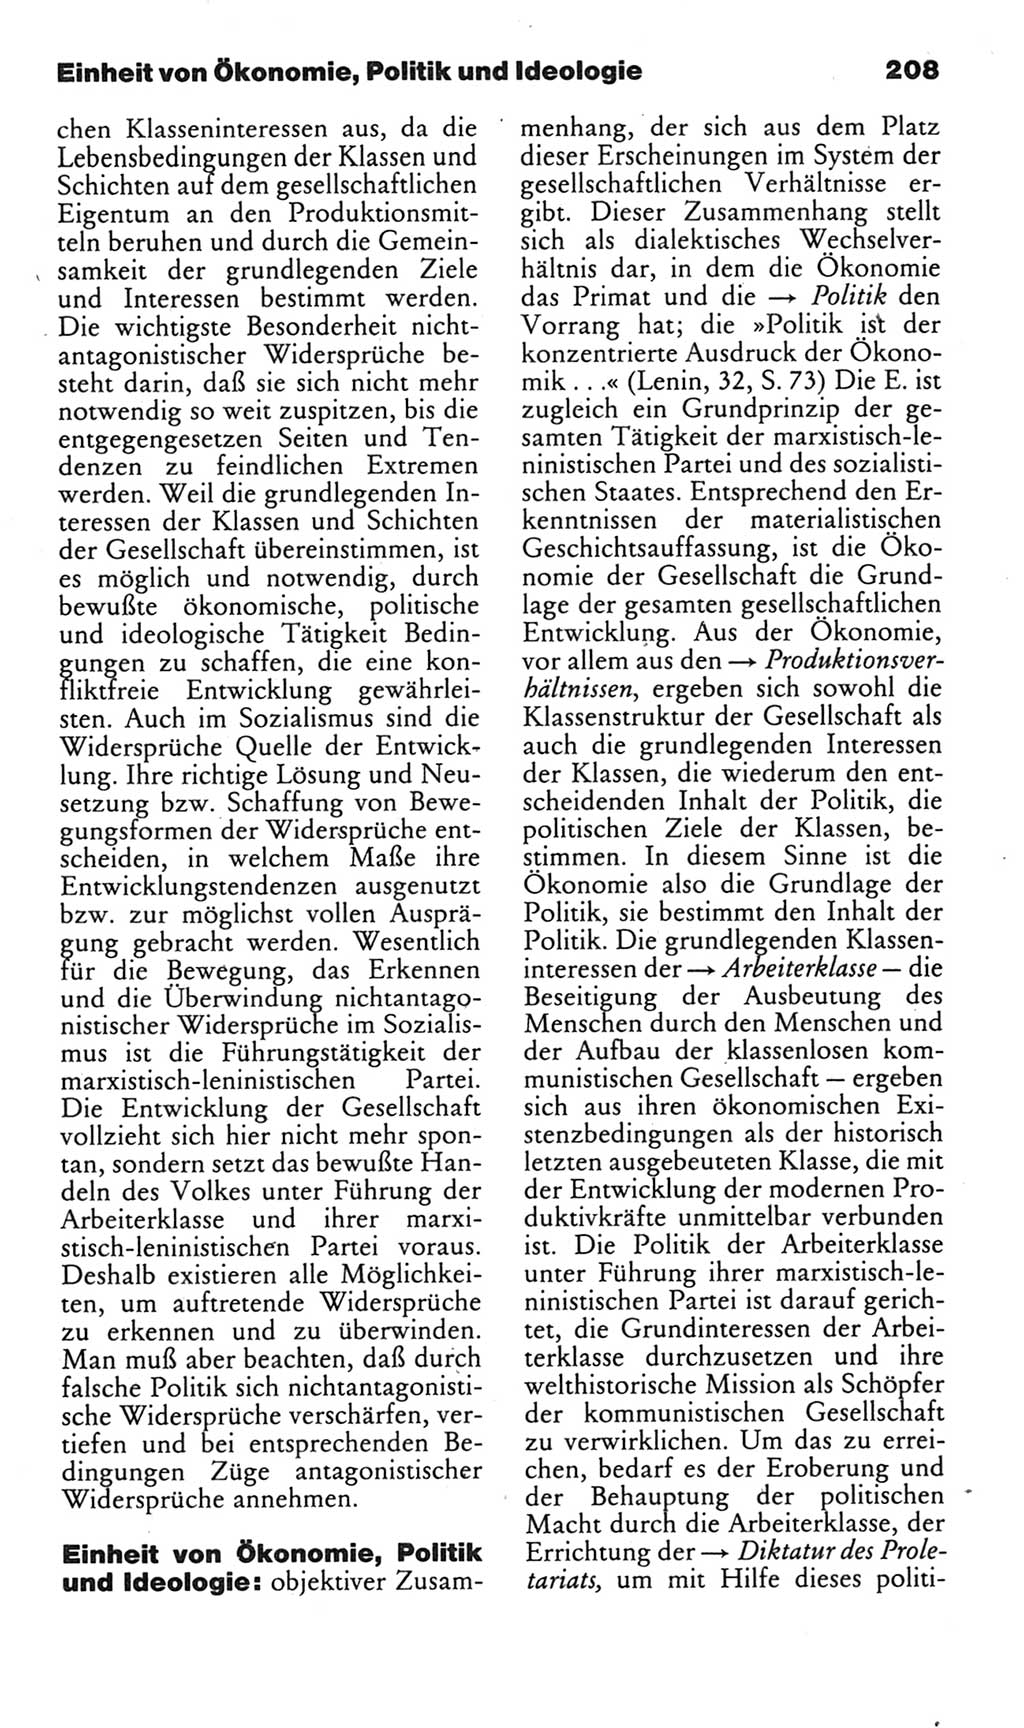 Kleines politisches Wörterbuch [Deutsche Demokratische Republik (DDR)] 1985, Seite 208 (Kl. pol. Wb. DDR 1985, S. 208)